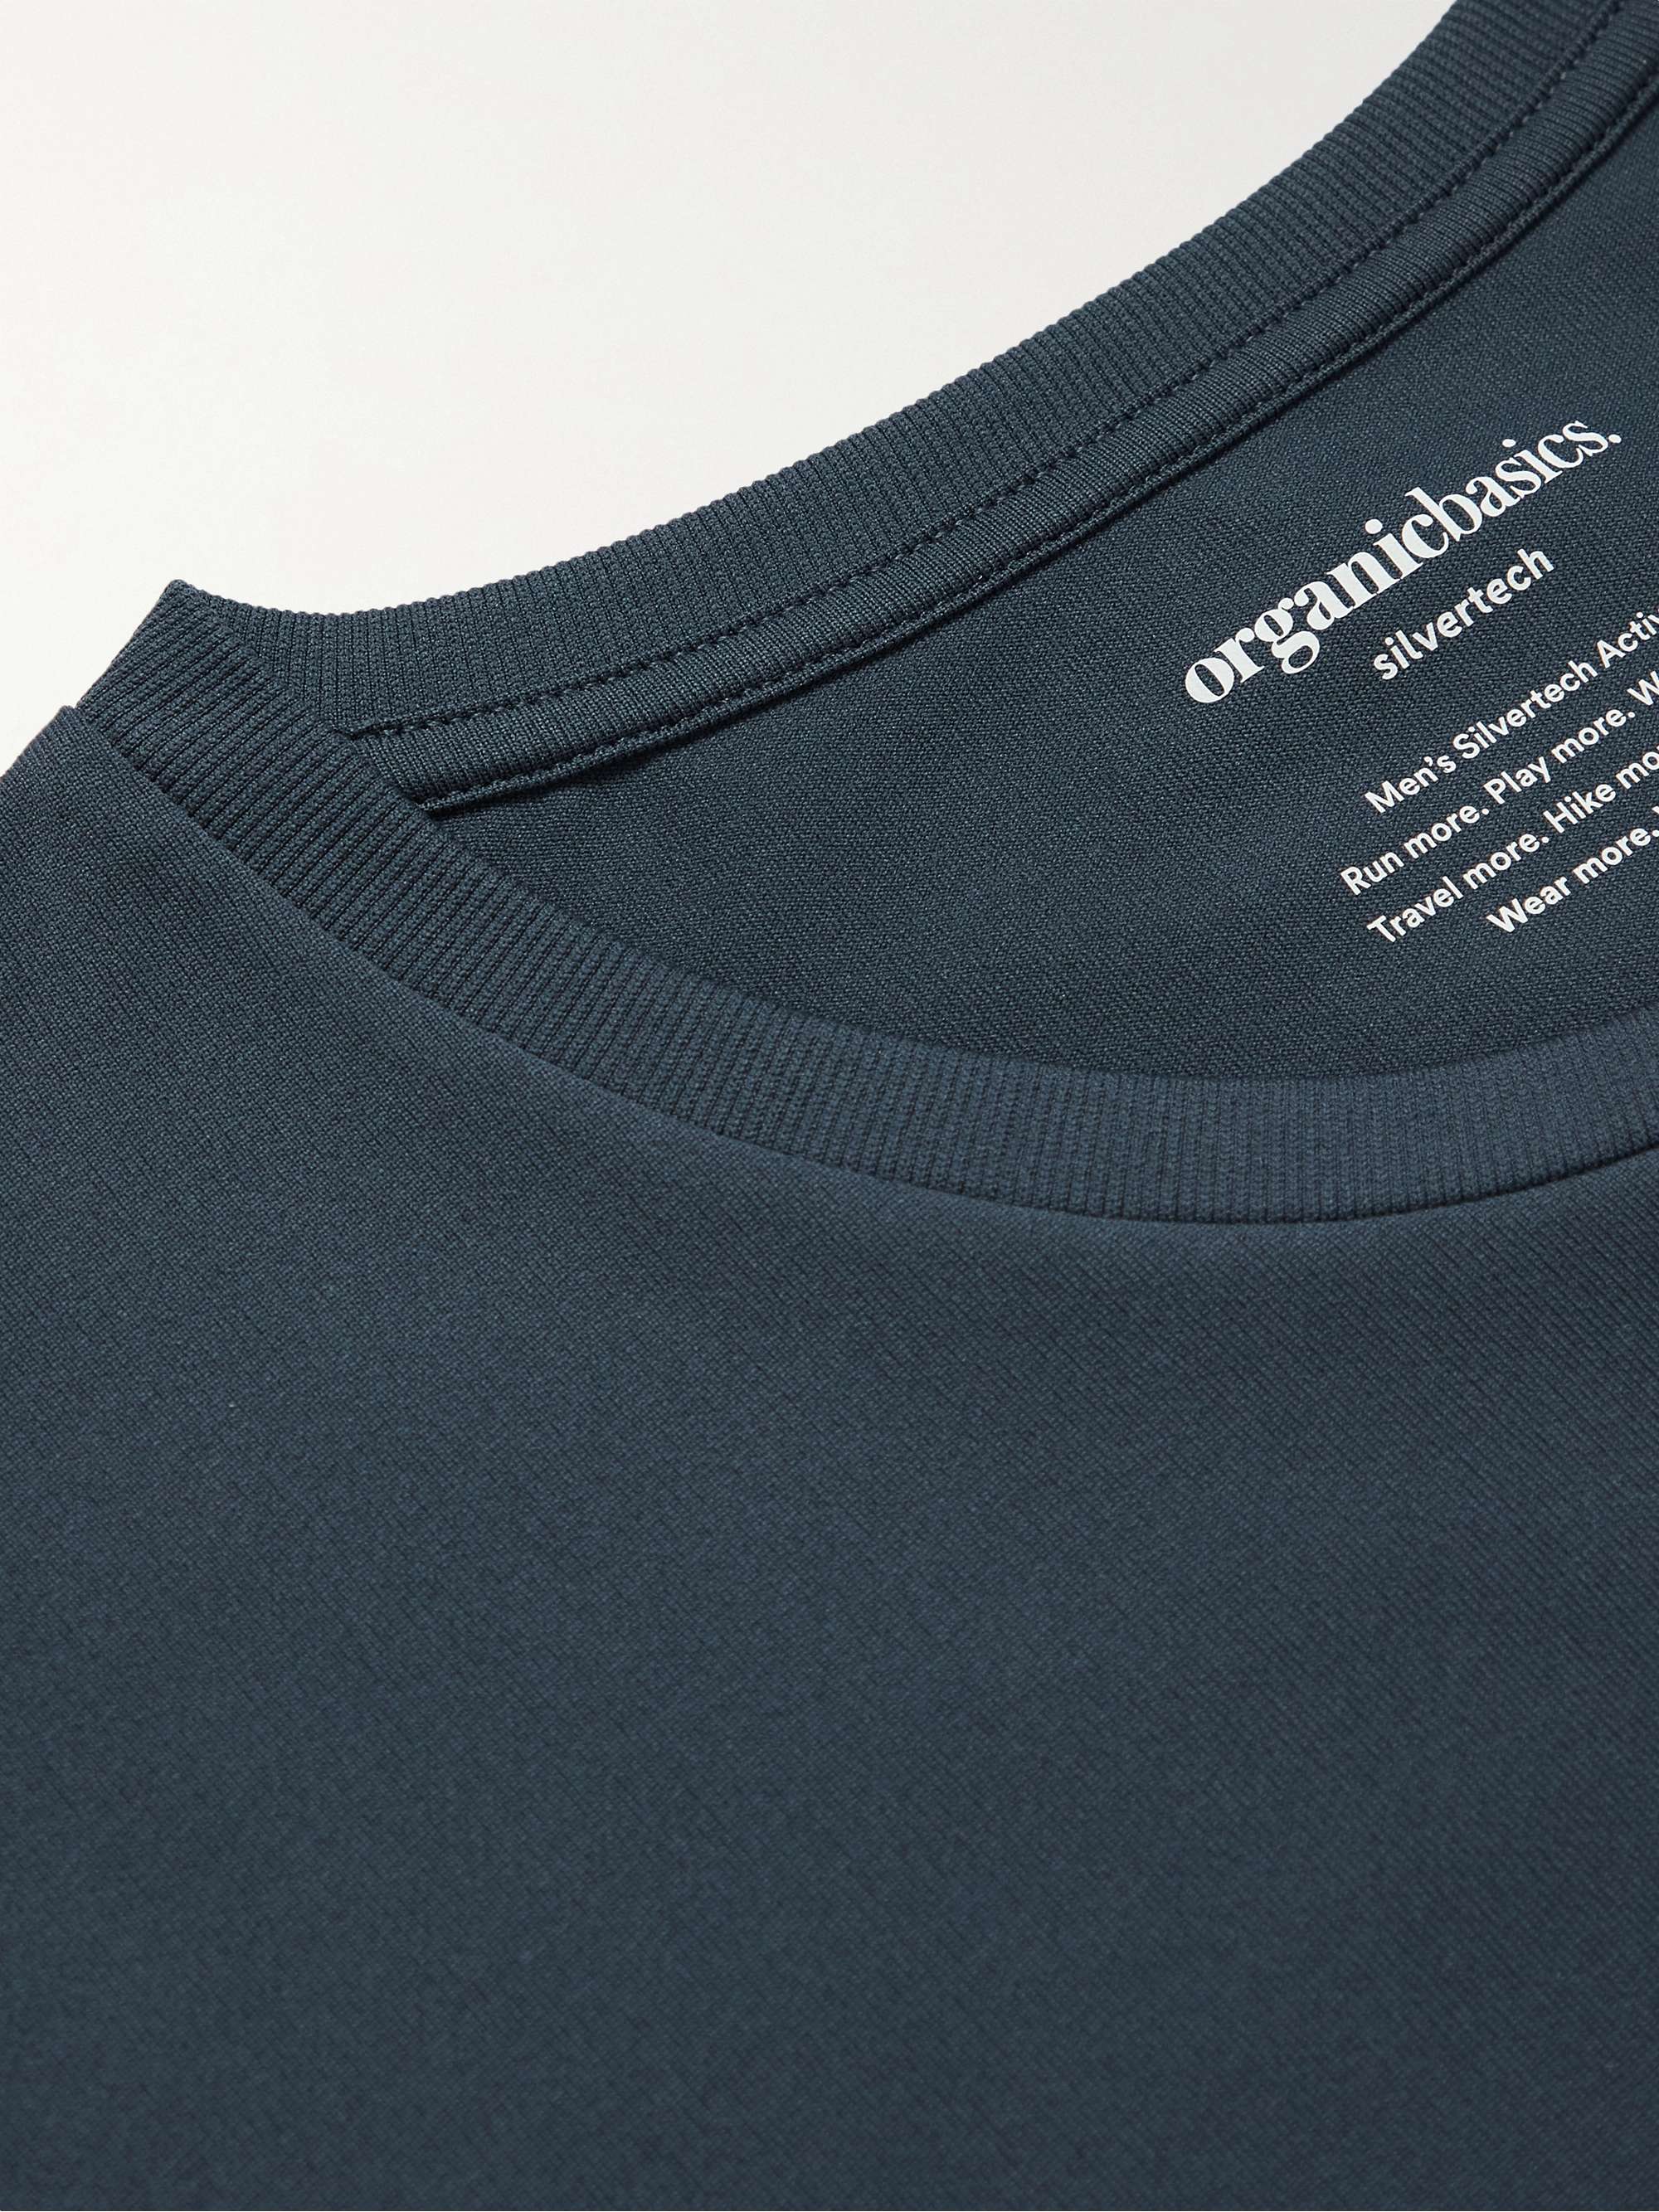 alien Særlig Korrupt ORGANIC BASICS SilverTech Active Recycled Nylon T-Shirt for Men | MR PORTER